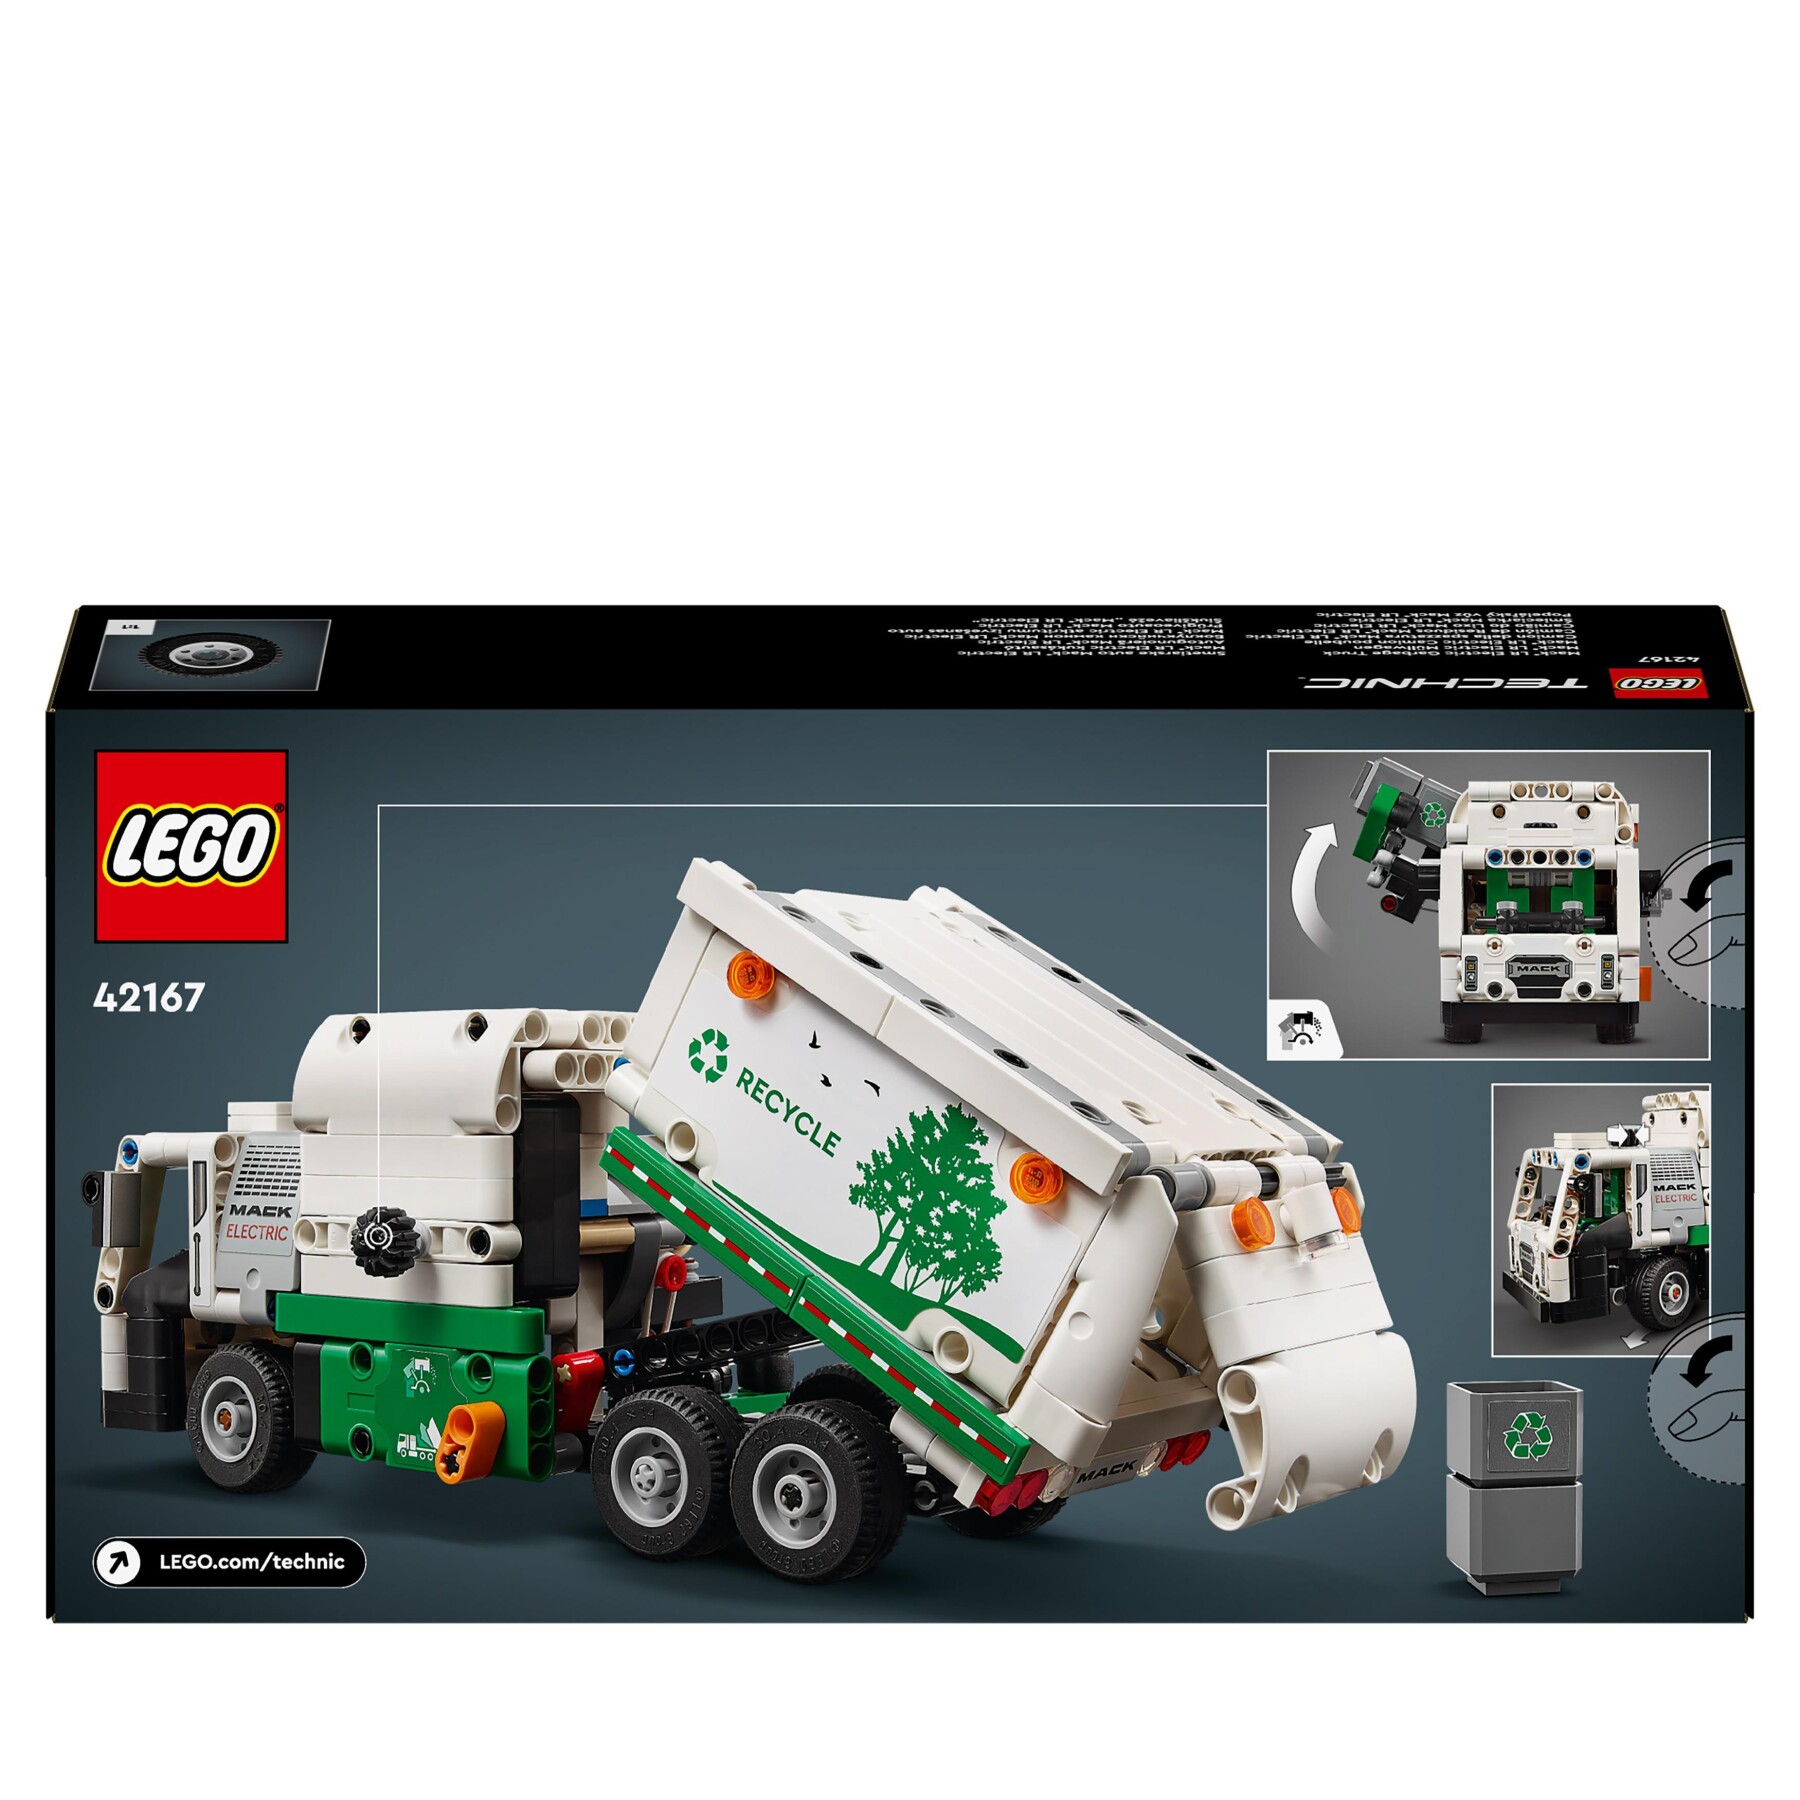 Lego technic 42167 camion della spazzatura mack lr electric, veicolo giocattolo raccolta rifiuti, gioco per bambini 8+ anni - LEGO TECHNIC